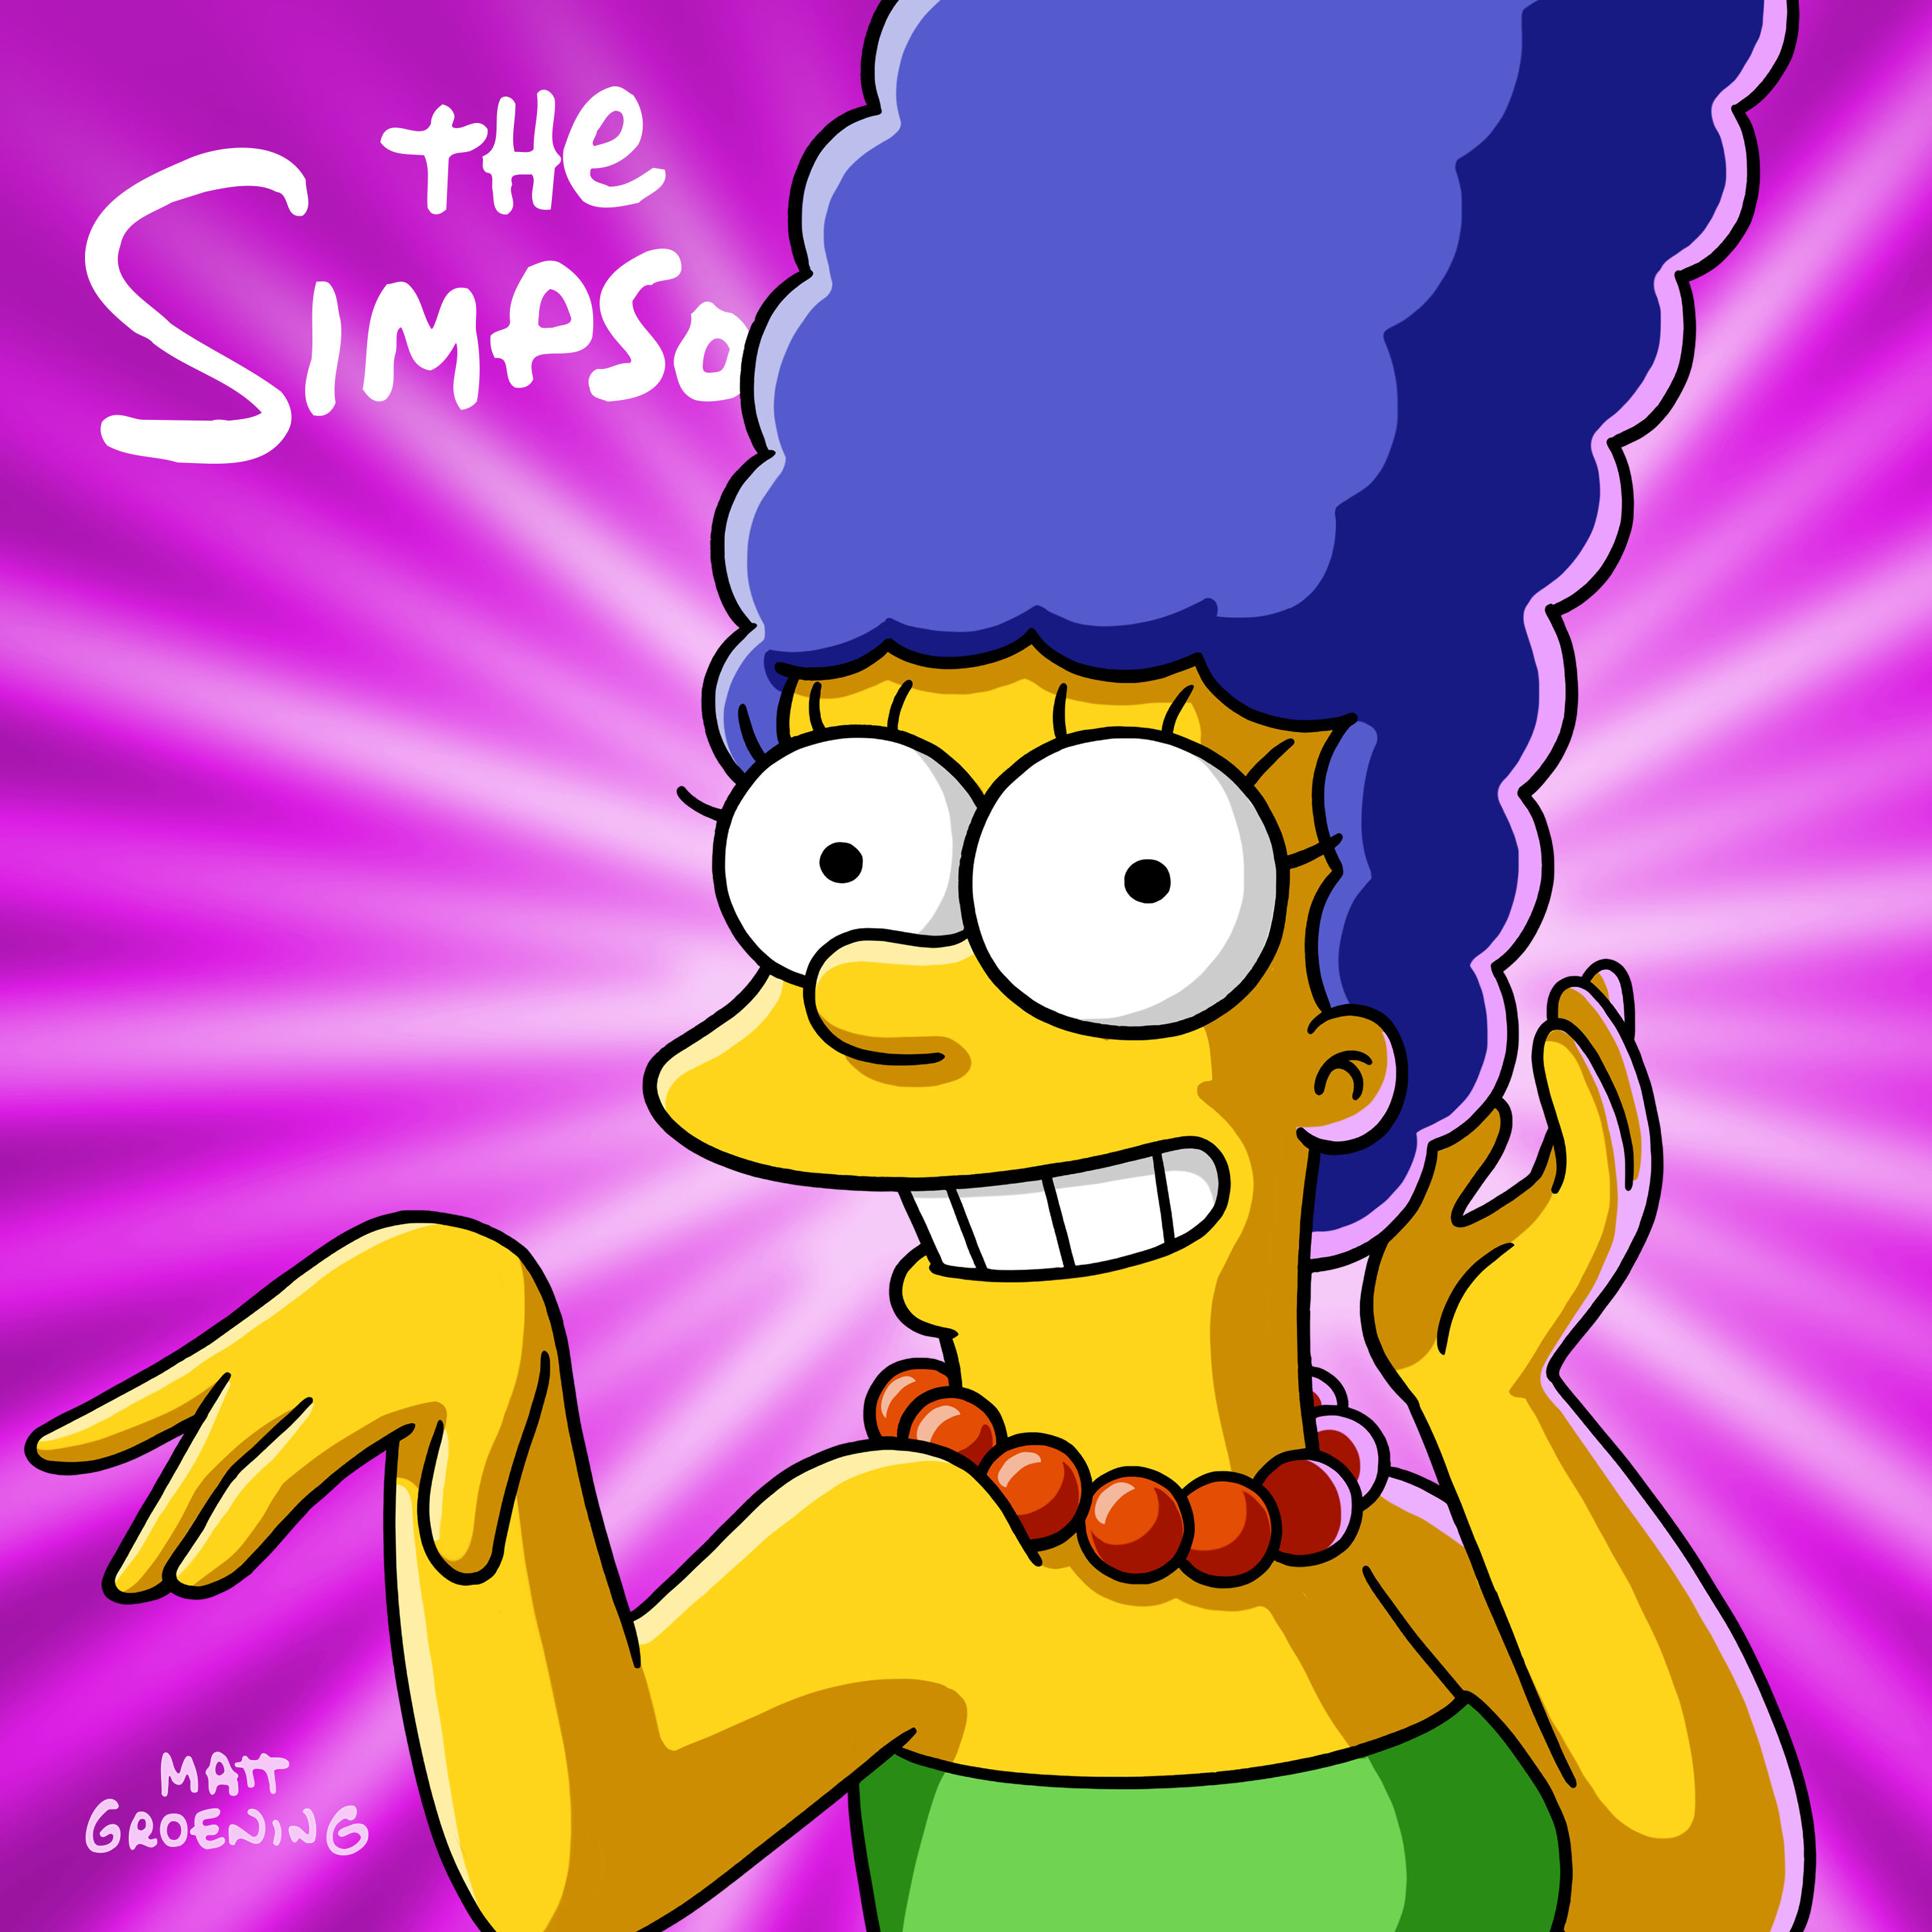 Box Dvd Os Simpsons - A Sétima Temporada Completa